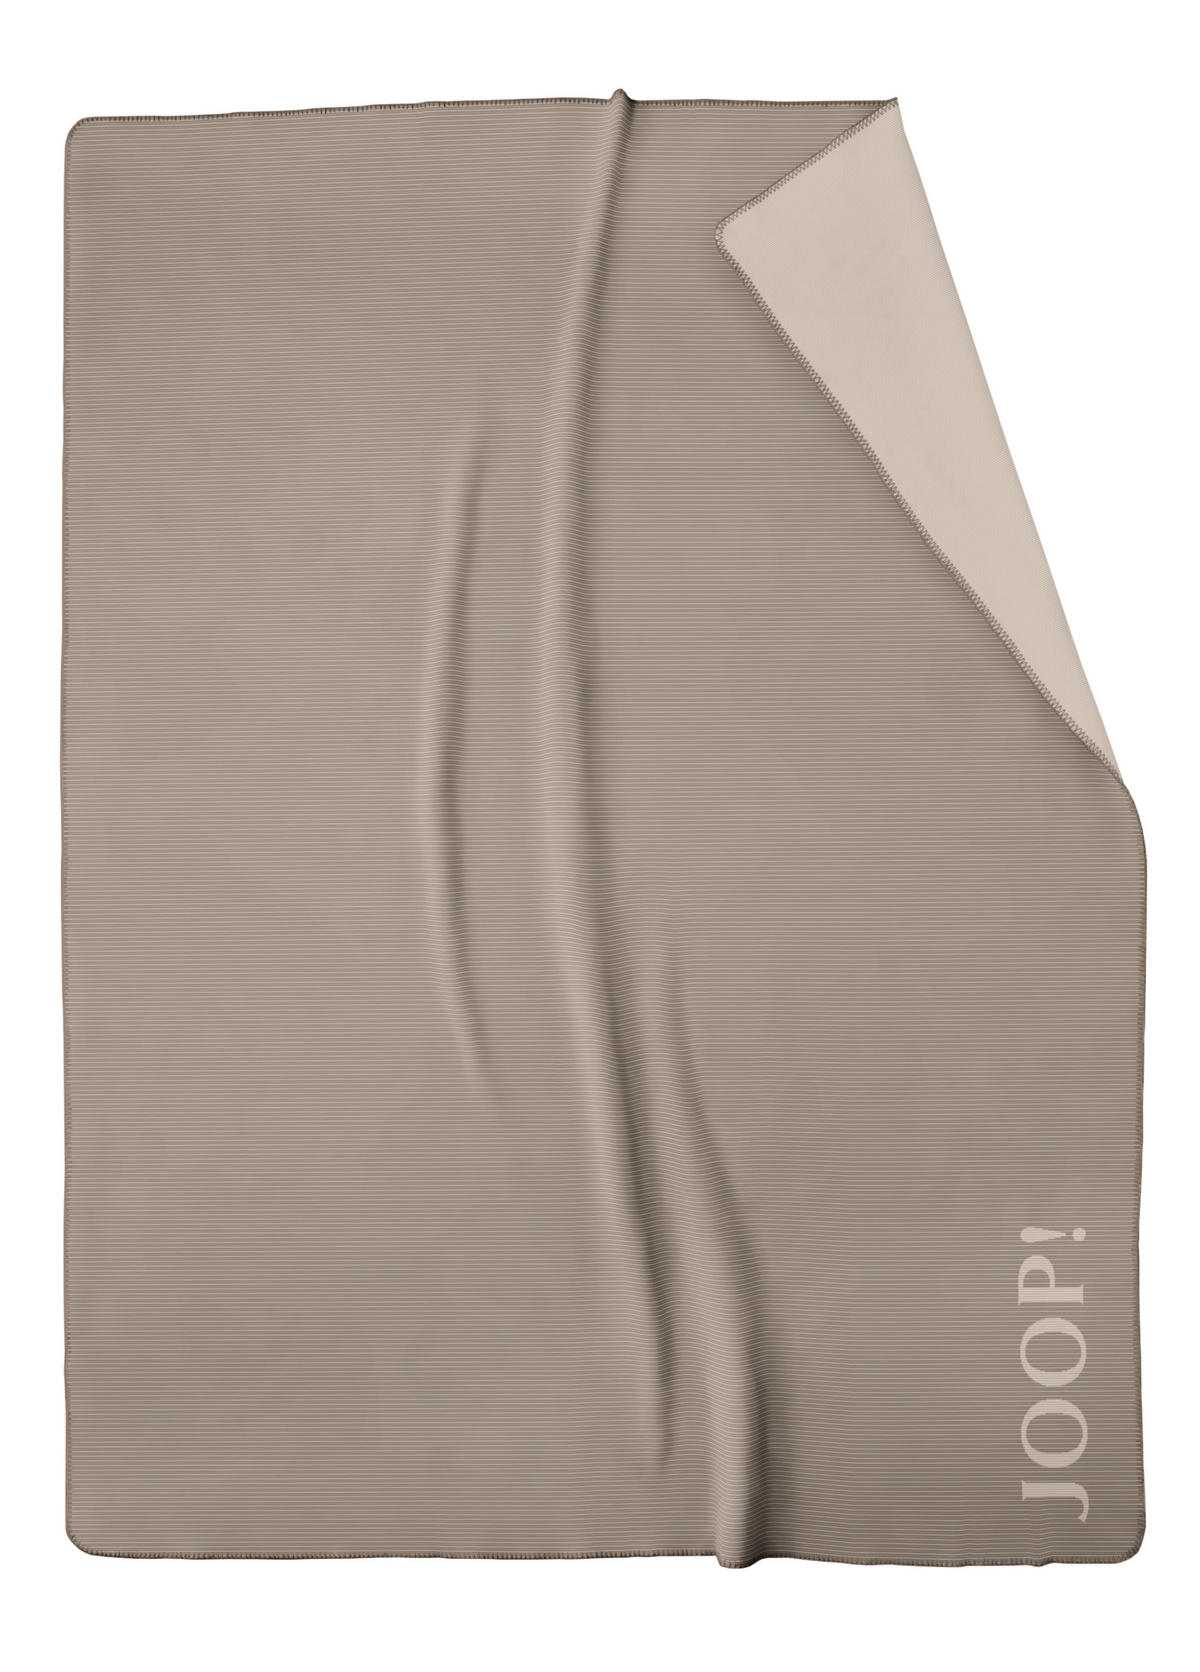 WOHNDECKE Touch 130/150 cm  - Anthrazit, Design, Textil (130/150cm) - Joop!